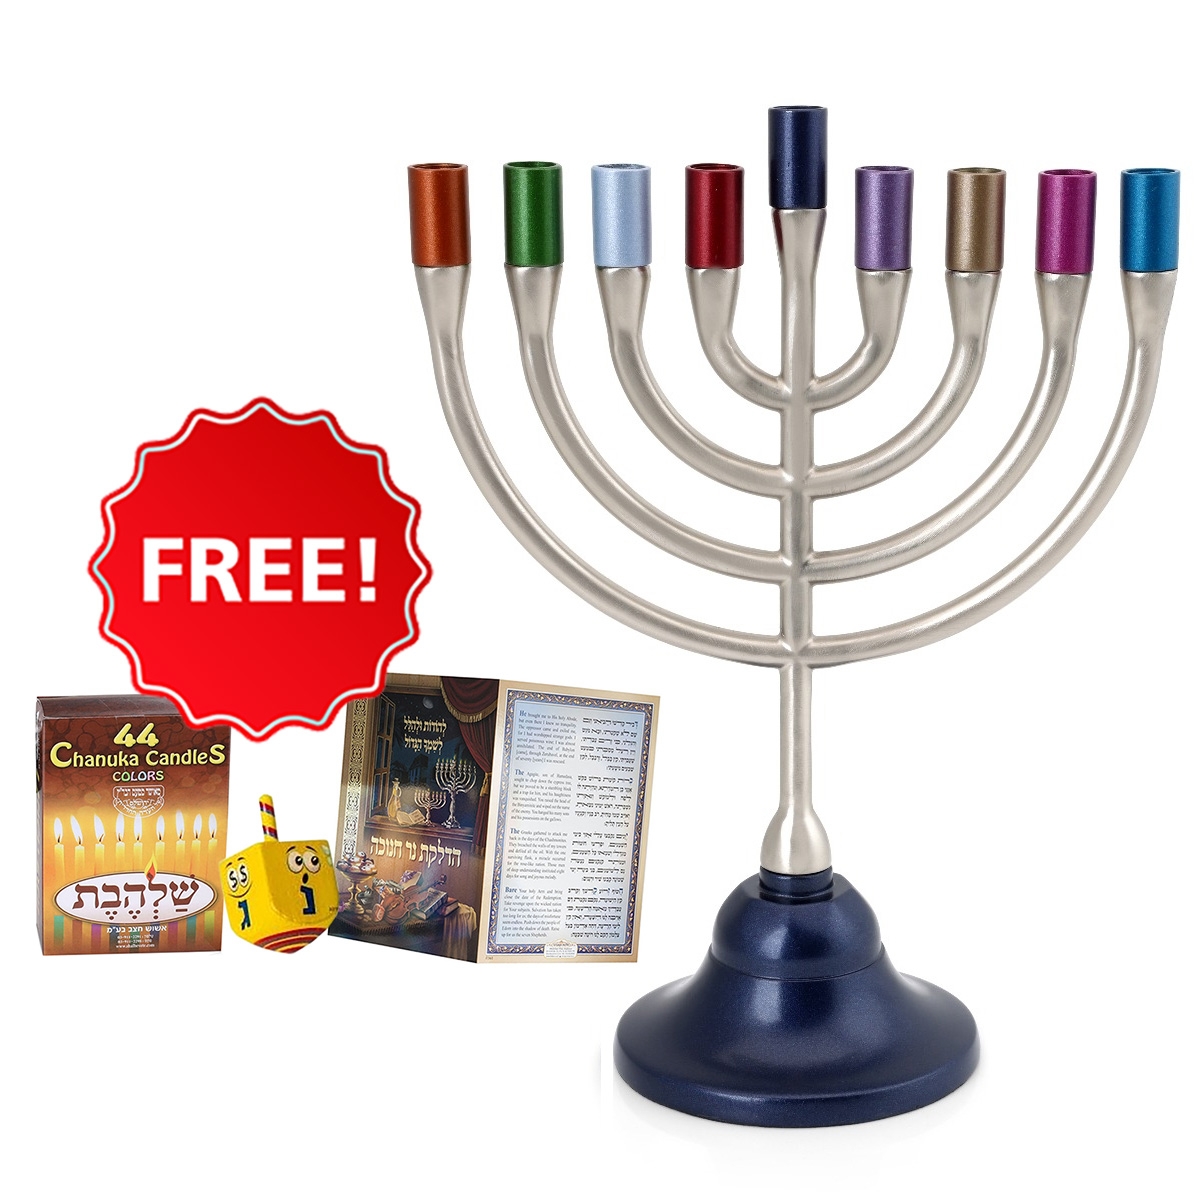 Colorful Traditional Hanukkah Menorah Gift Set by Yair Emanuel - 1